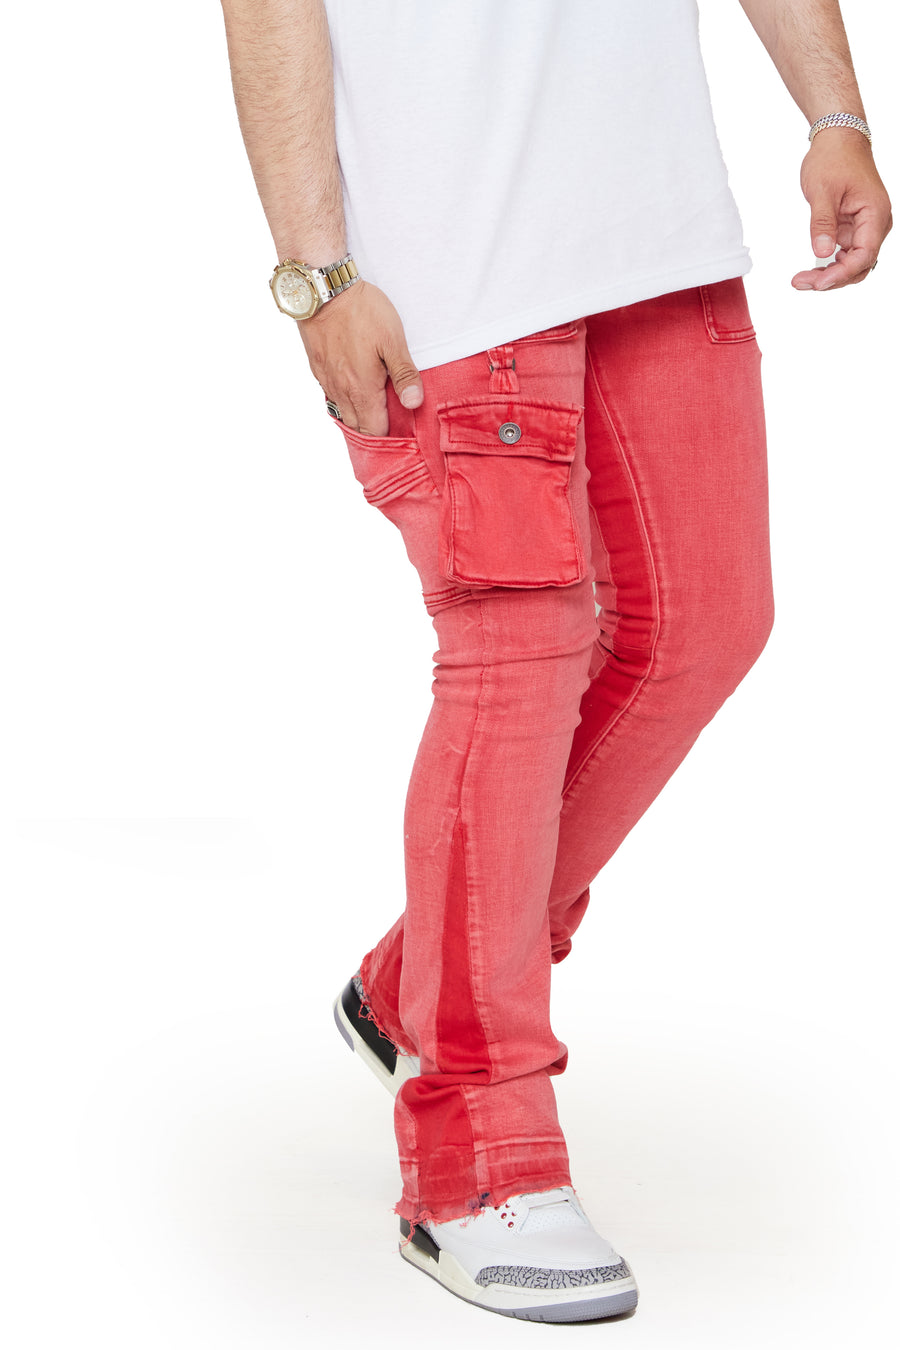 redbat mens moda fita jeans tamanho 46 trending calças mans jeans